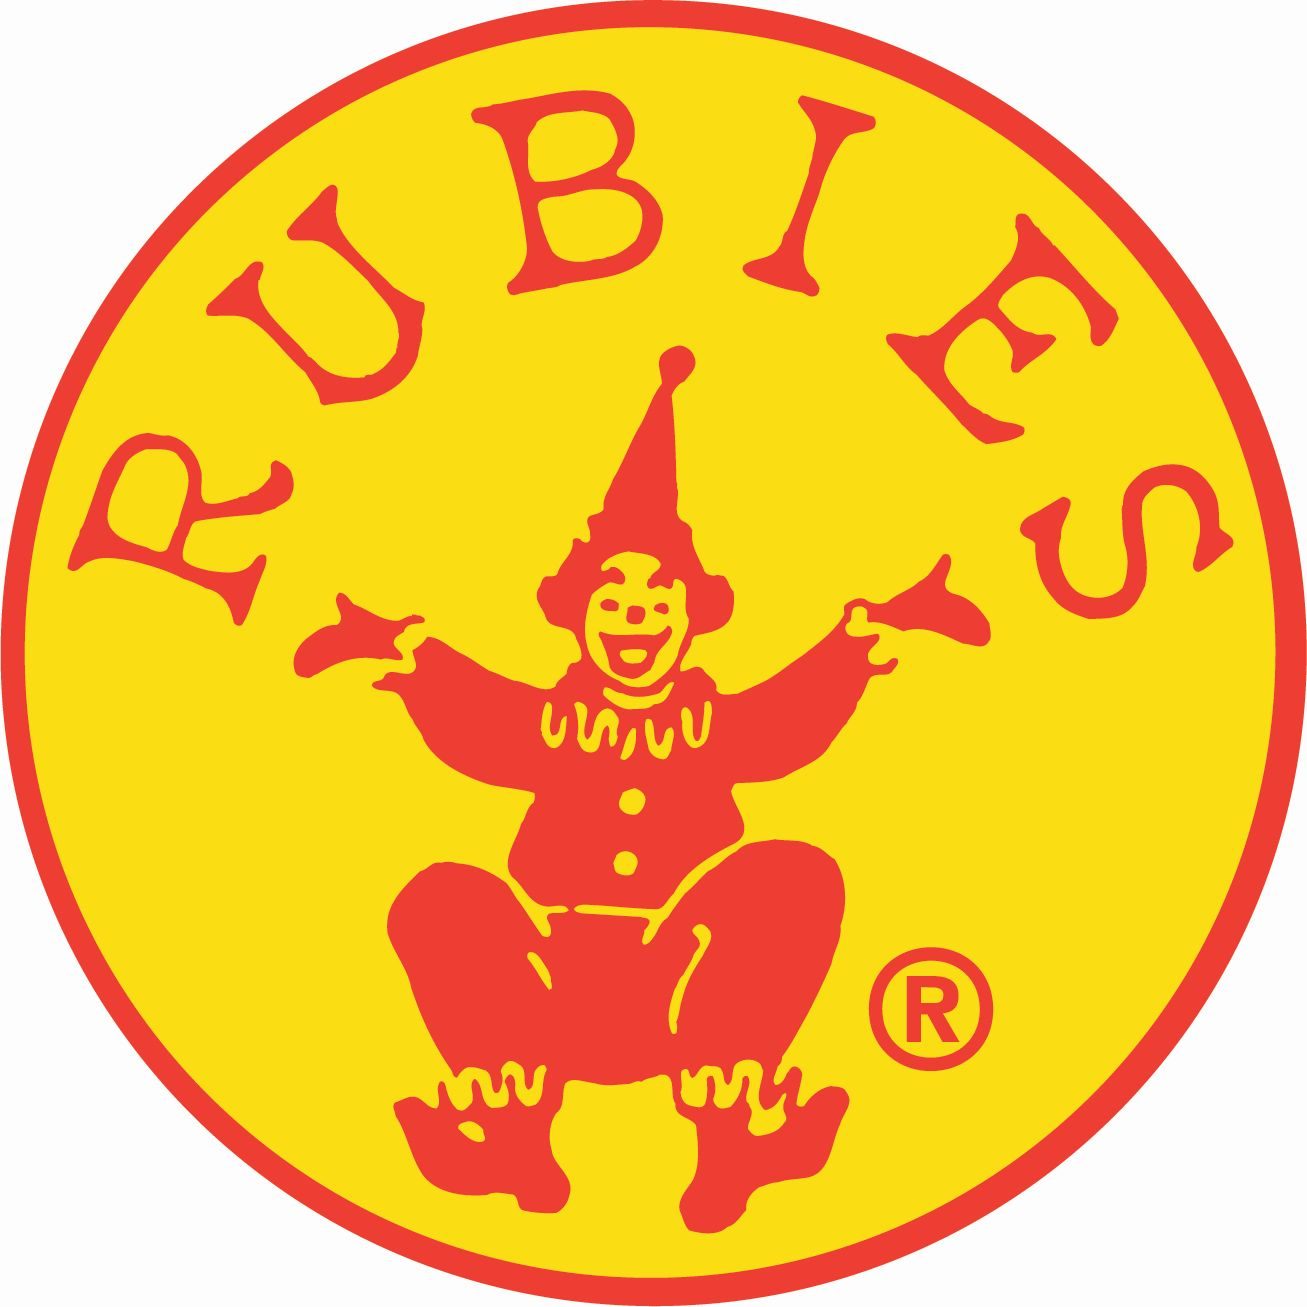                   Rubies II Blog